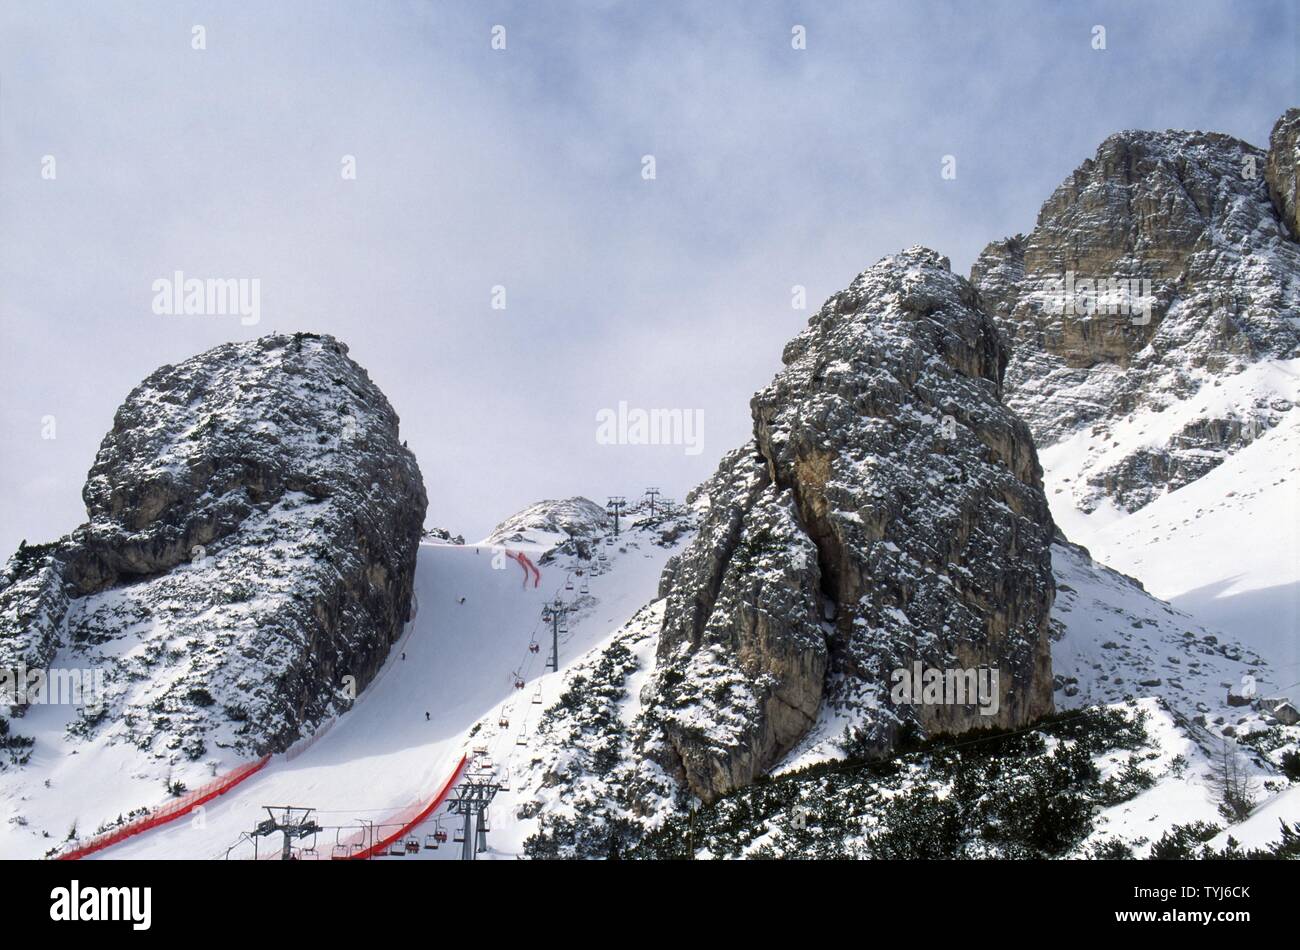 Cortina d'Ampezzo (Italien), die skipiste der "Olympia delle Tofane", die alpinen Skiwettkämpfe der Frauen wird während der 2026 Winter Olympics host Stockfoto